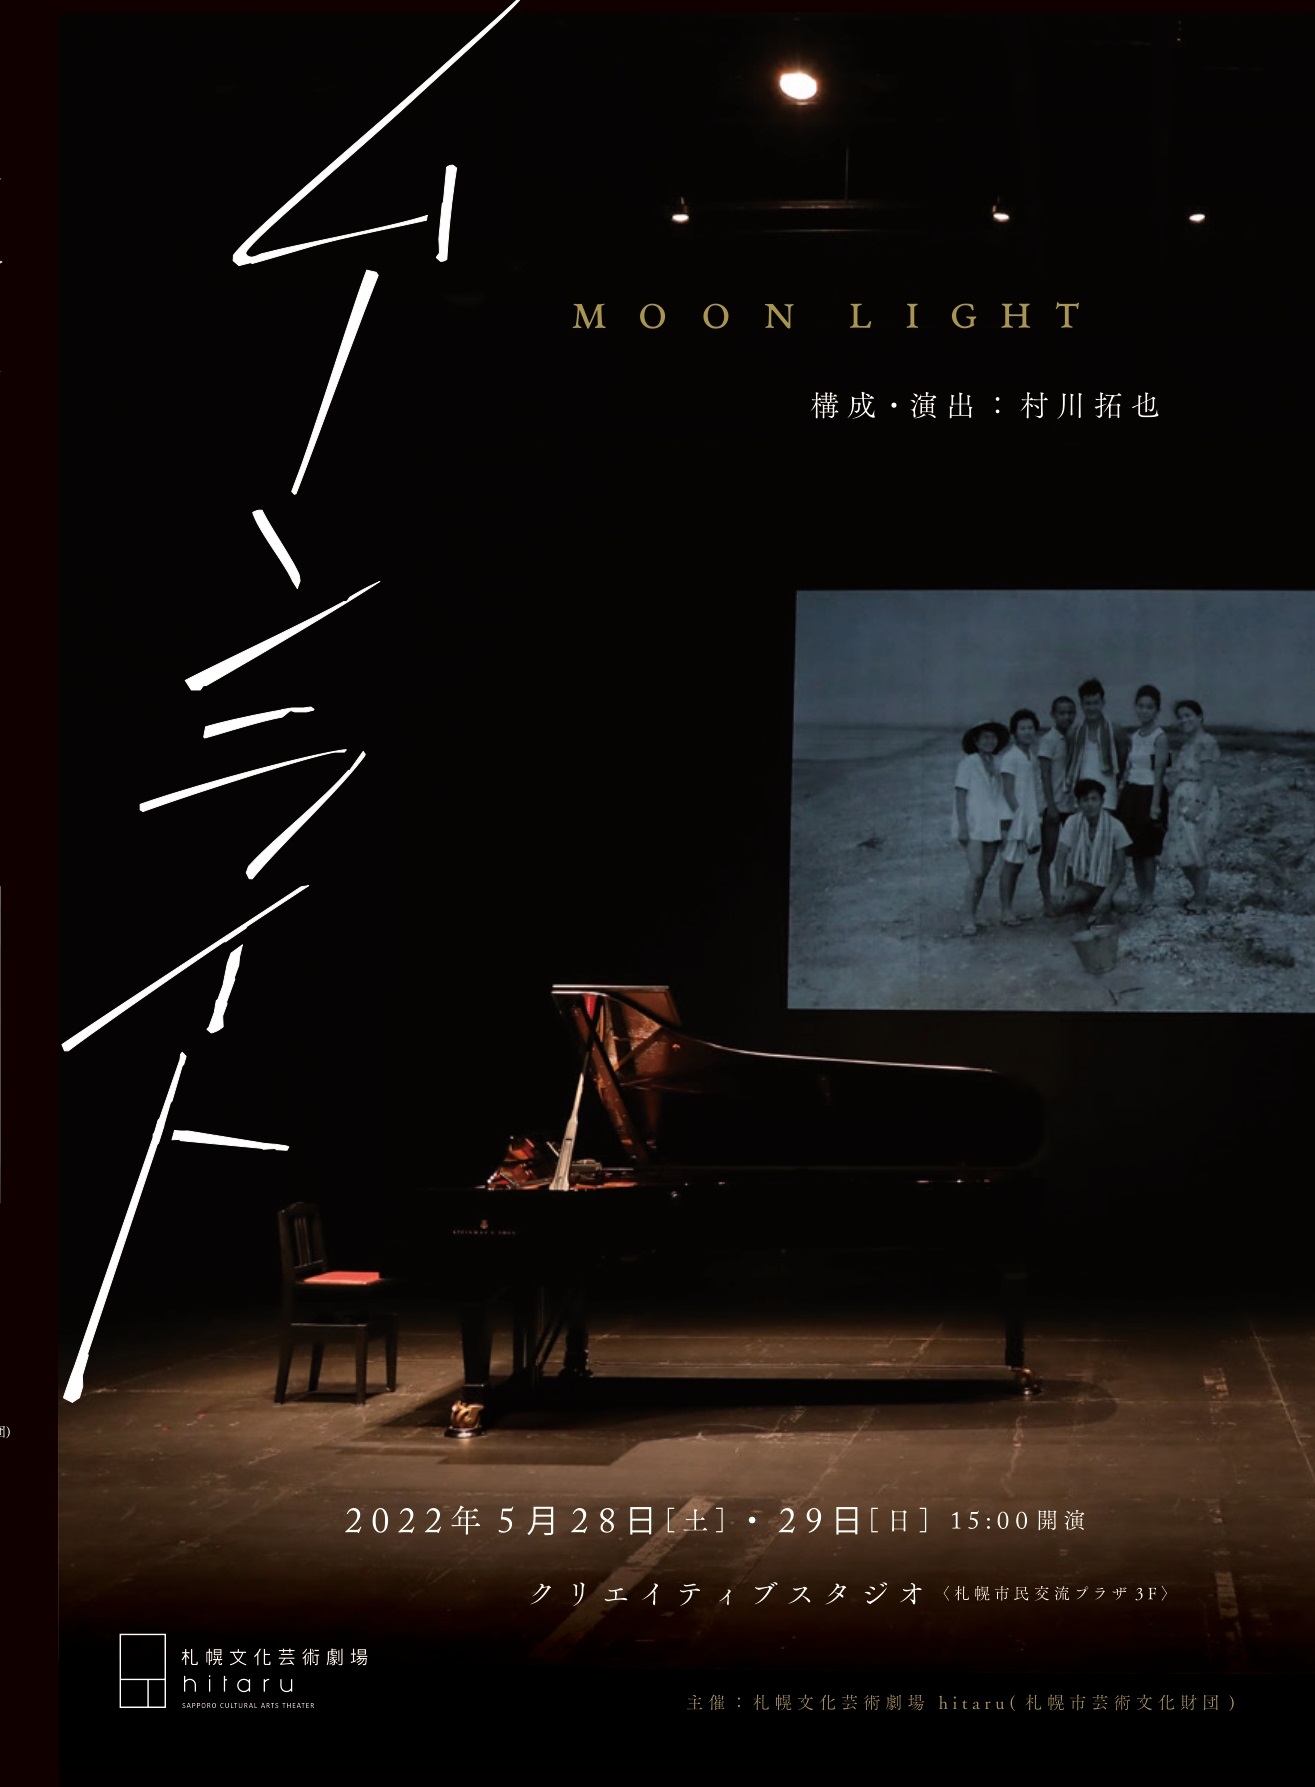 “Moonlight” by Takuya Murakawa (director, film artist) image 1